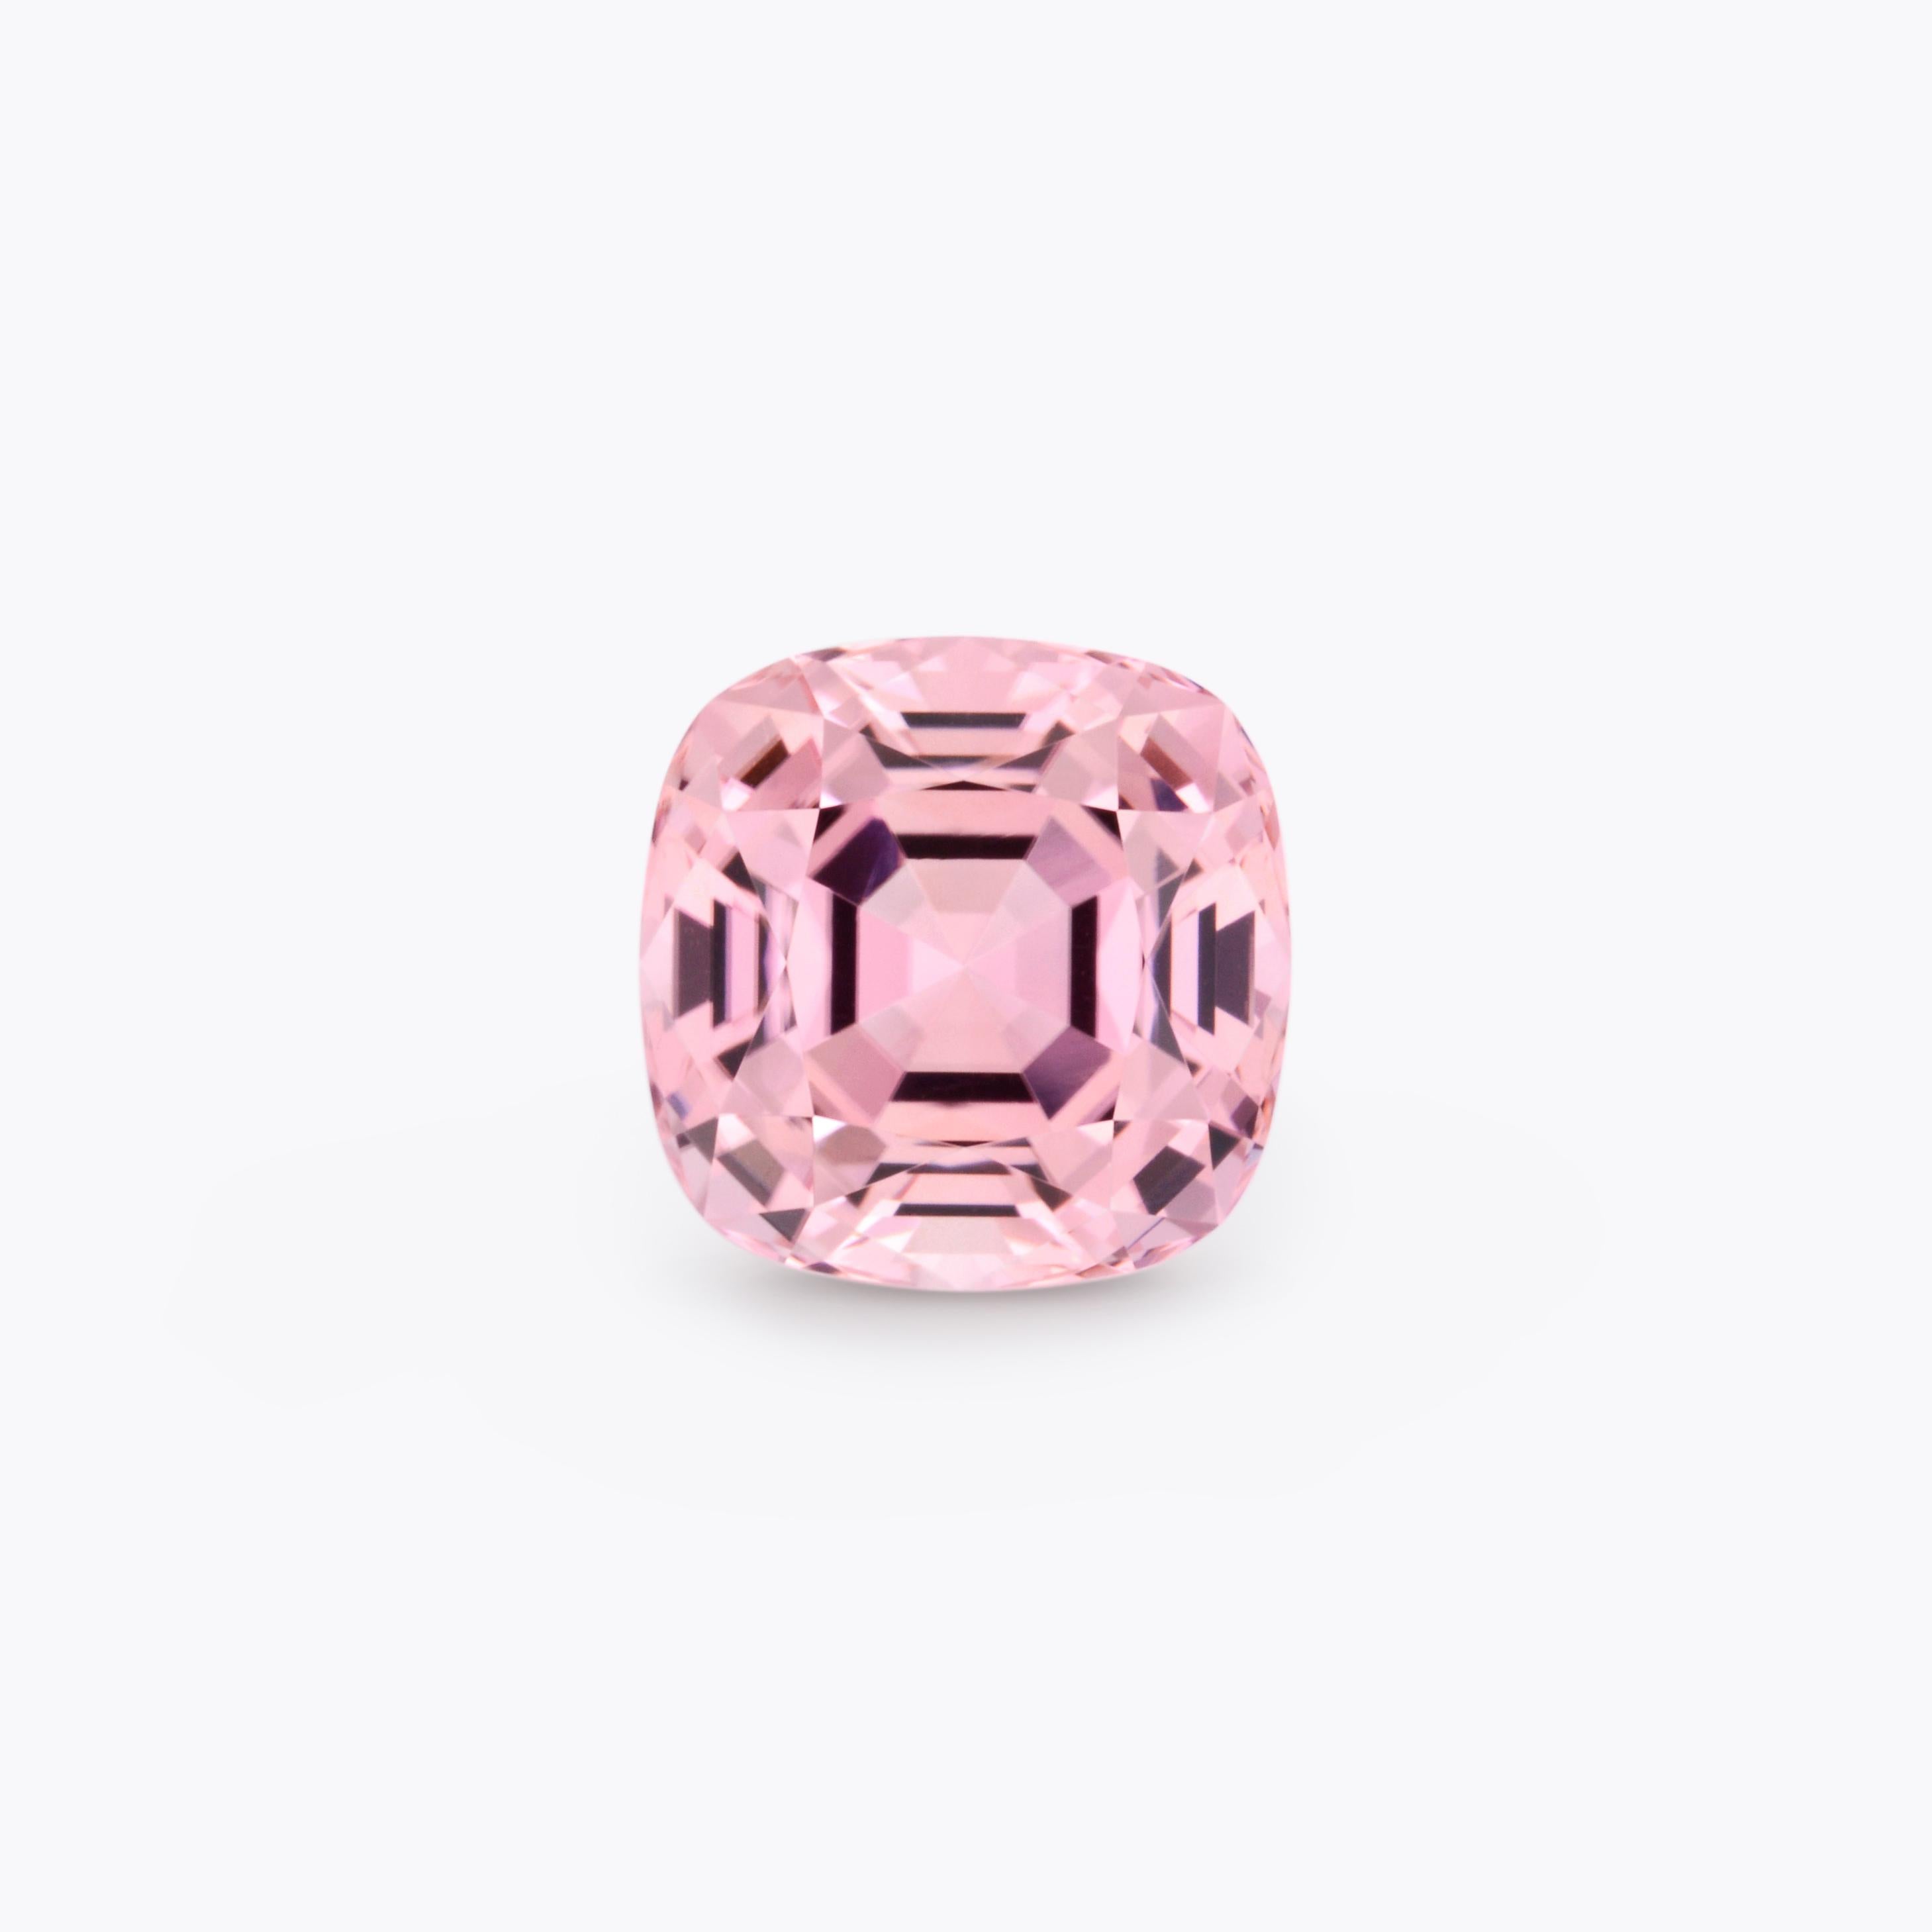 Cushion Cut Pink Tourmaline Ring Loose Stone 7.46 Carat Cushion Unmounted Gemstone